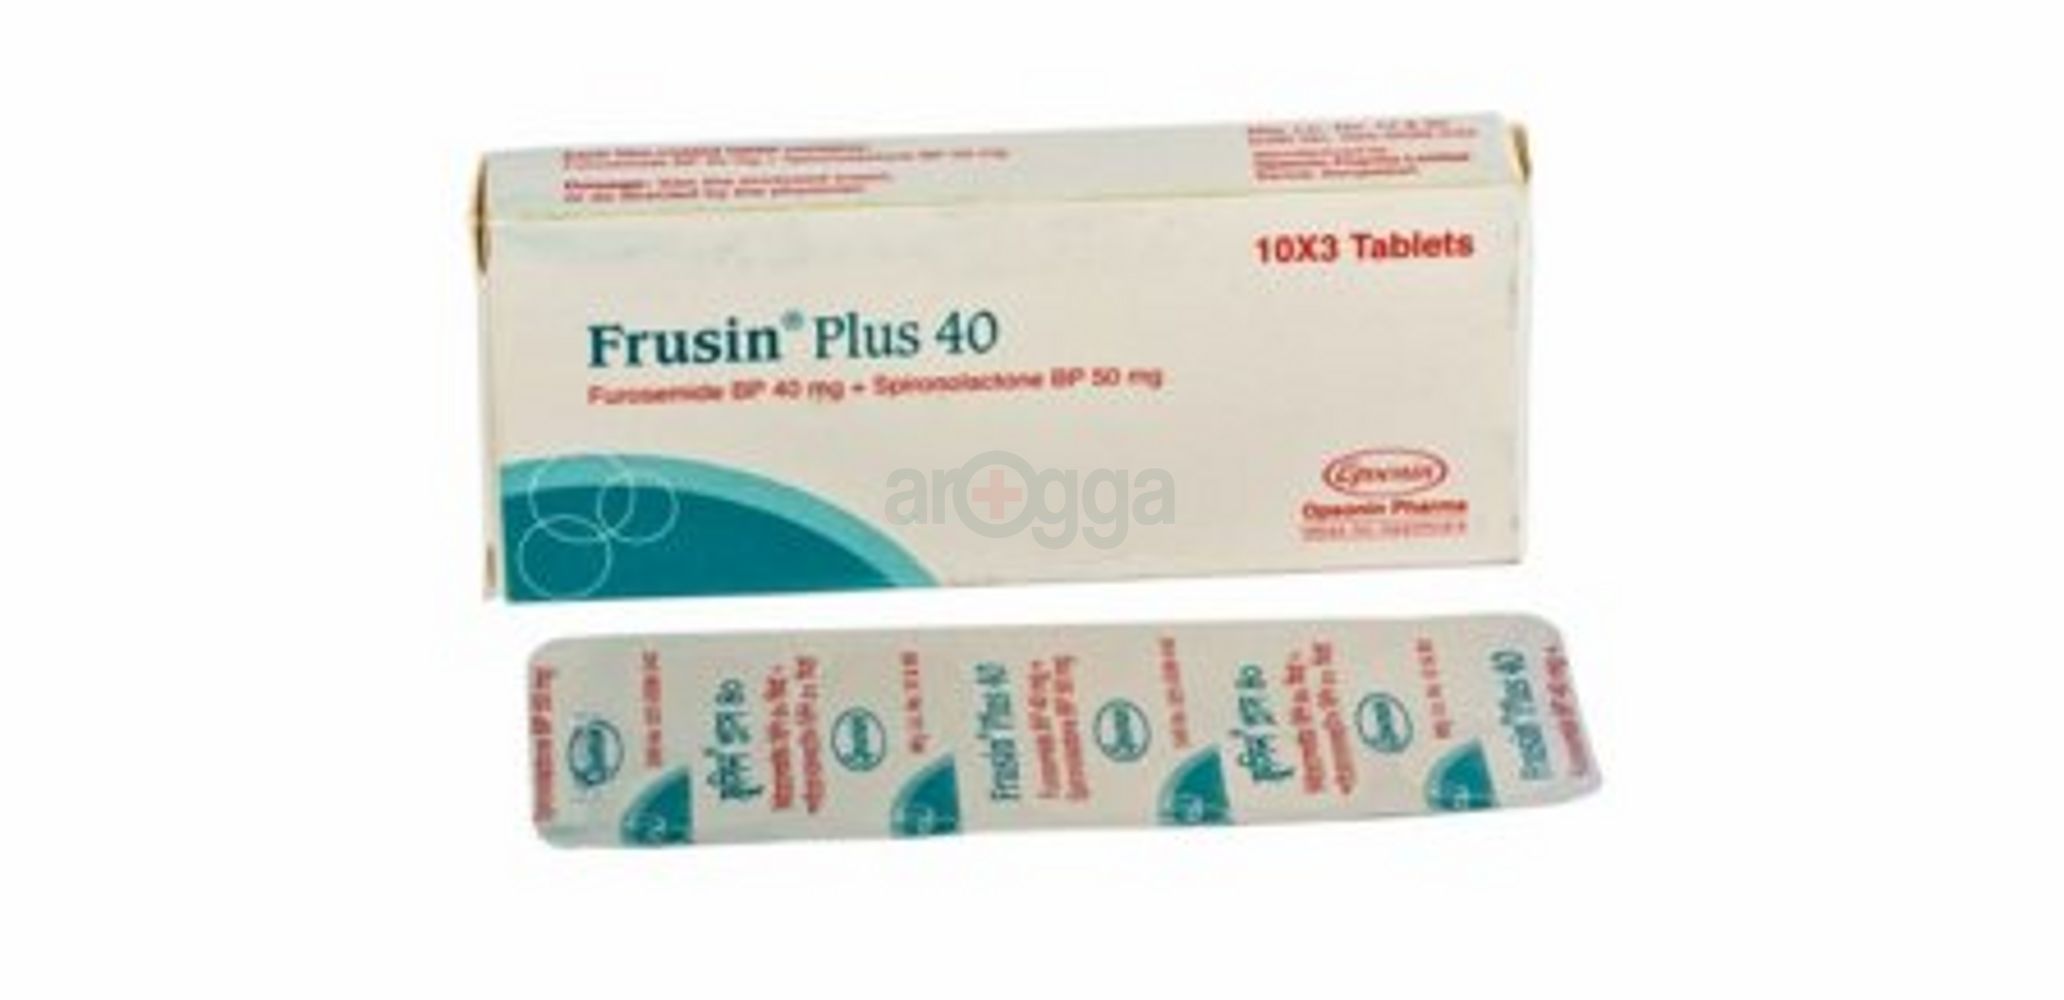 Frusin Plus 40